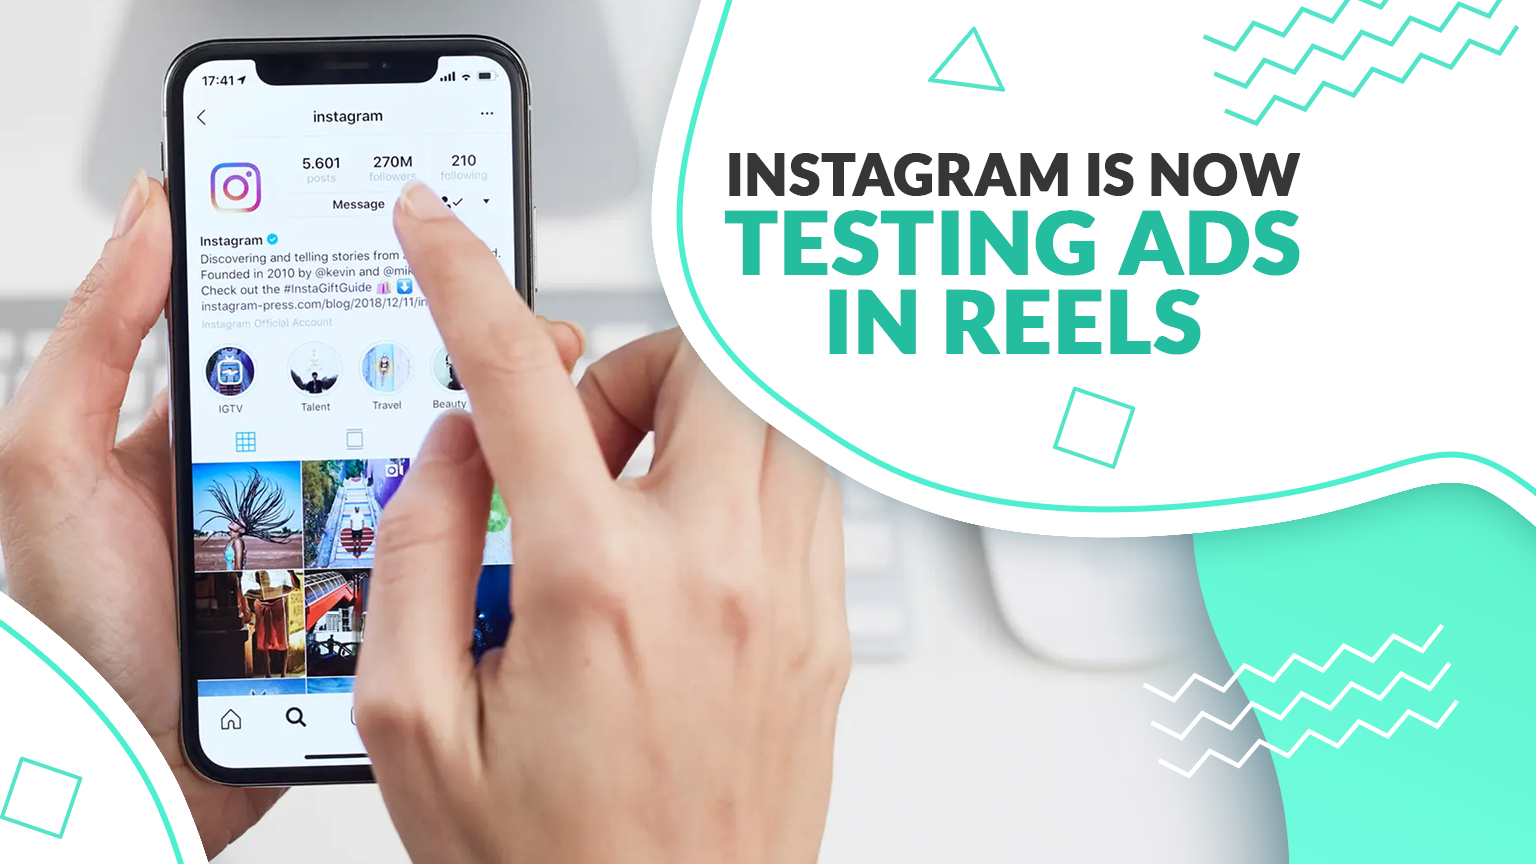 Instagram is now testing ads in Reels